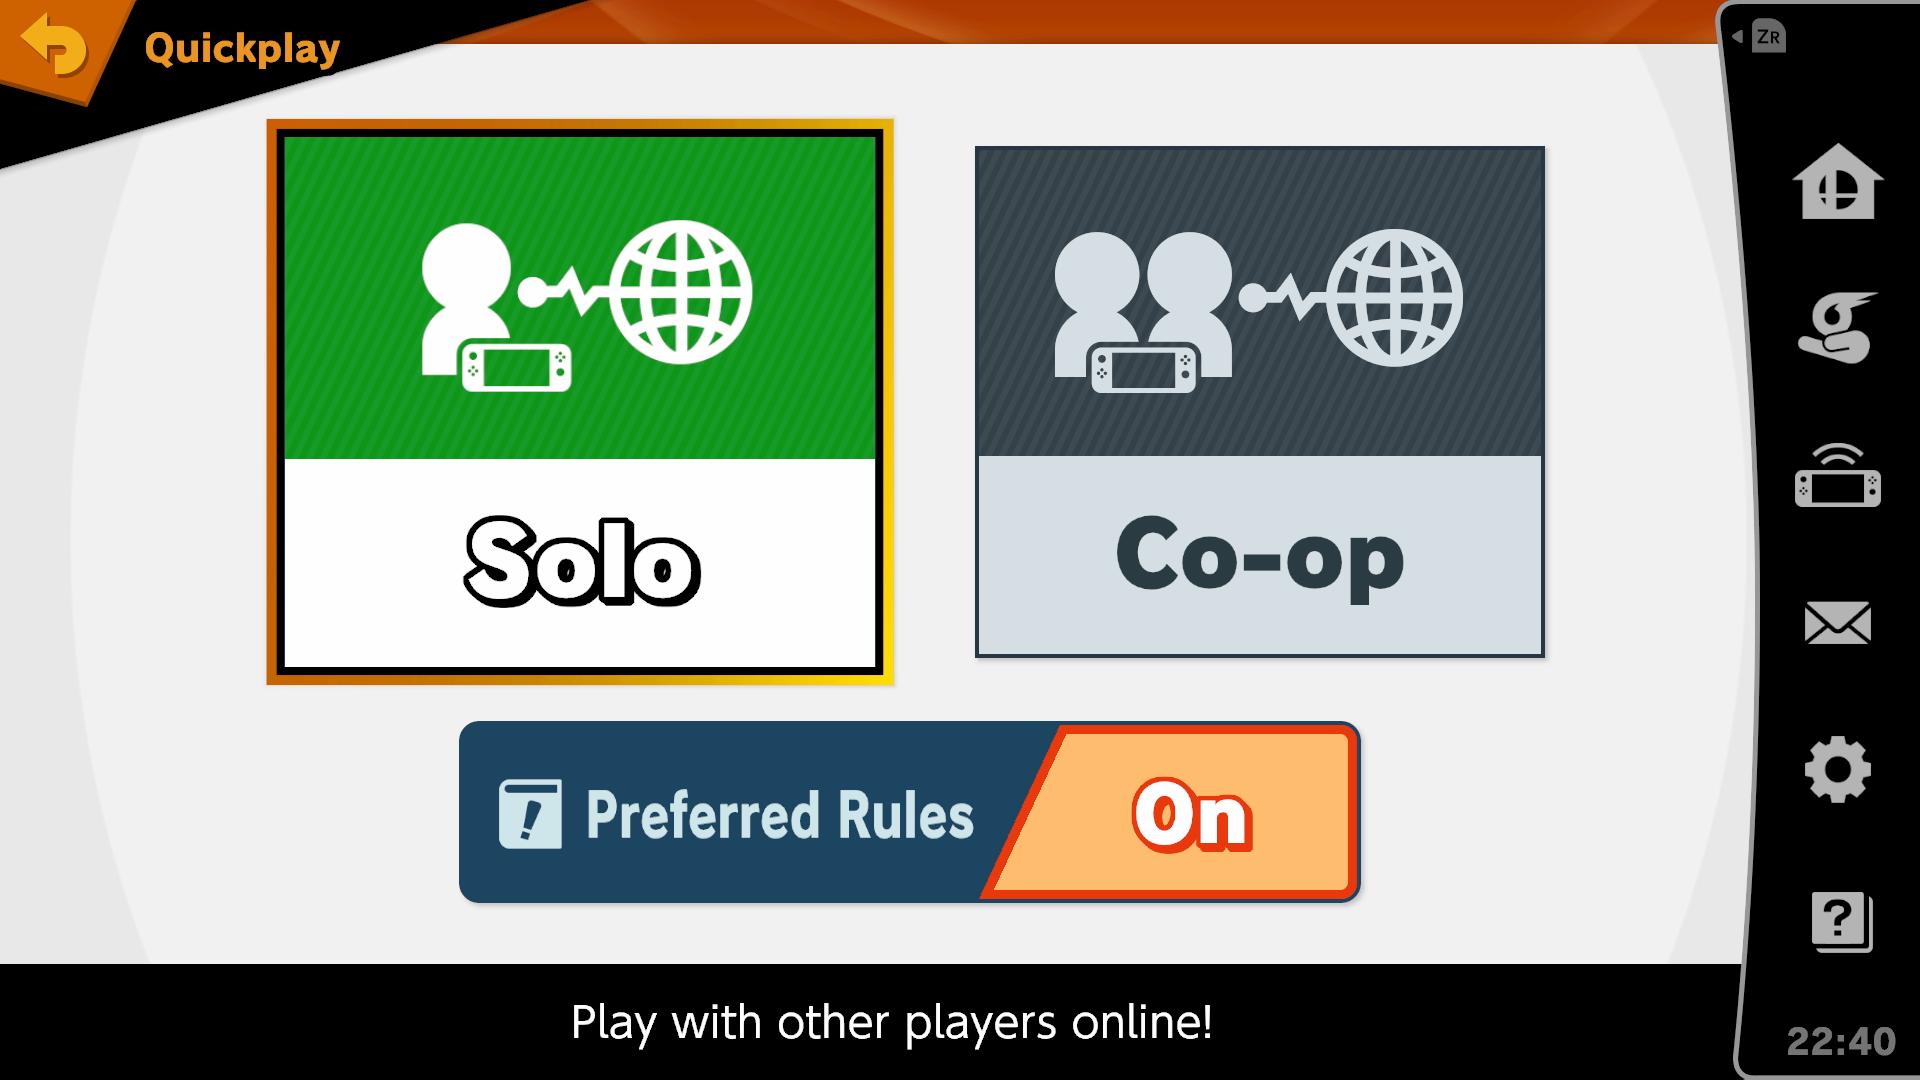 Super Smash Bros 3ds online matchmaking Blender vapaa dating site